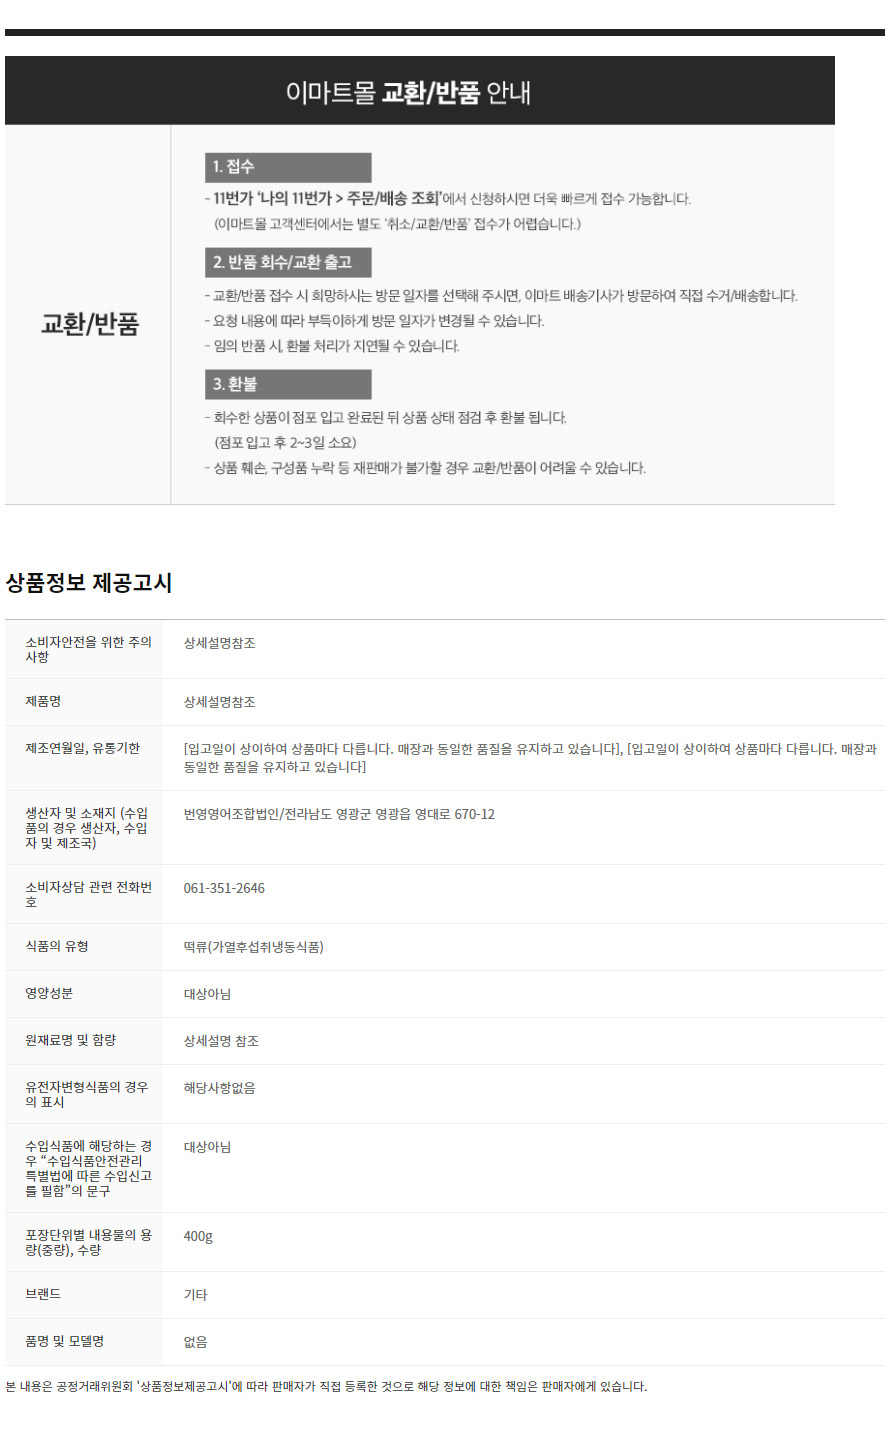 韓國食品-[영광떡공방] 햇살빚은 생 모시송편(동부) 400g